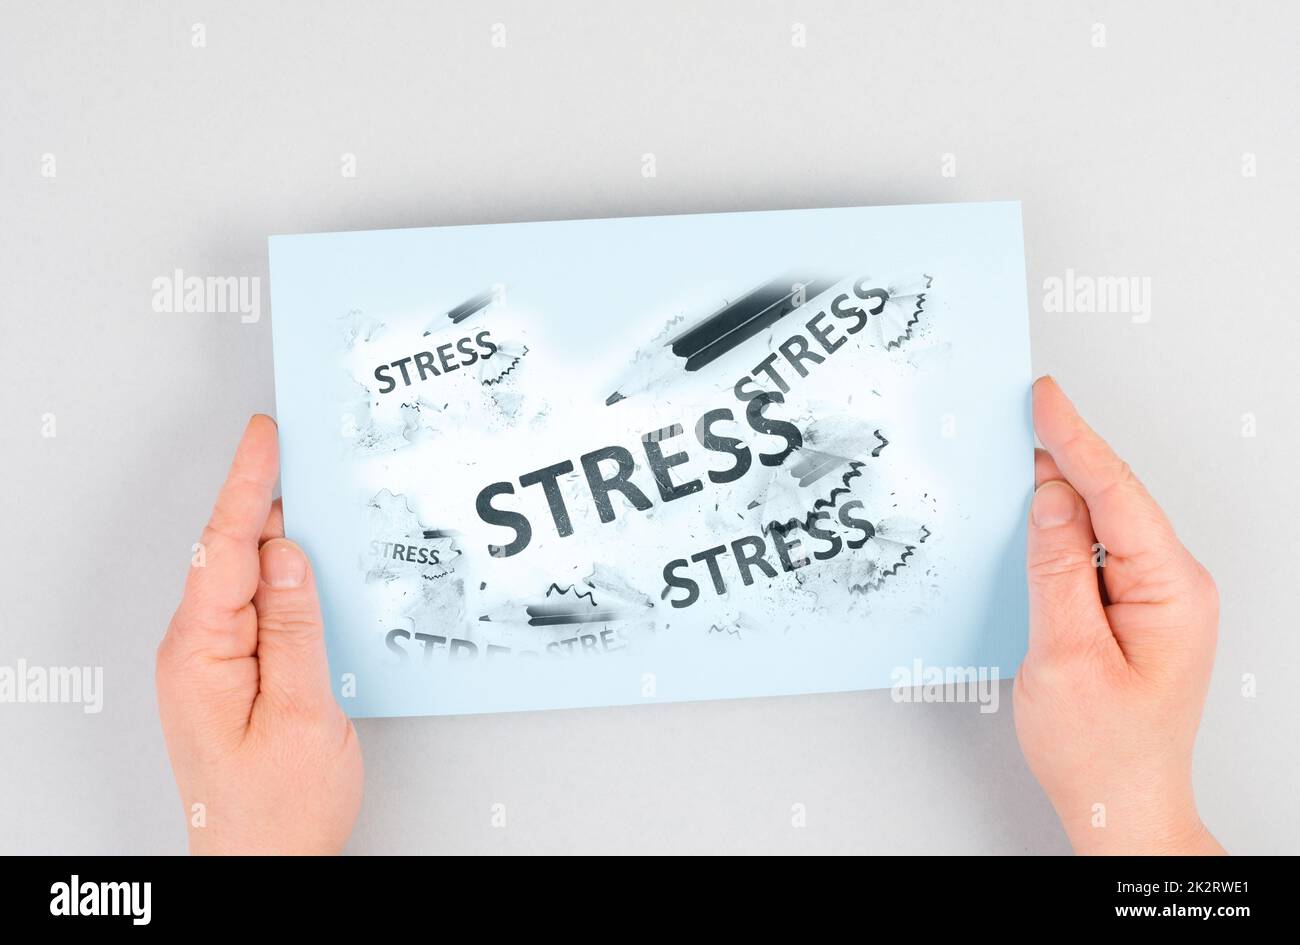 Le mot stress se trouve sur un papier, un stylo à gomme, un concept de brunissage, un équilibre de vie professionnelle, une rupture par épuisement Banque D'Images